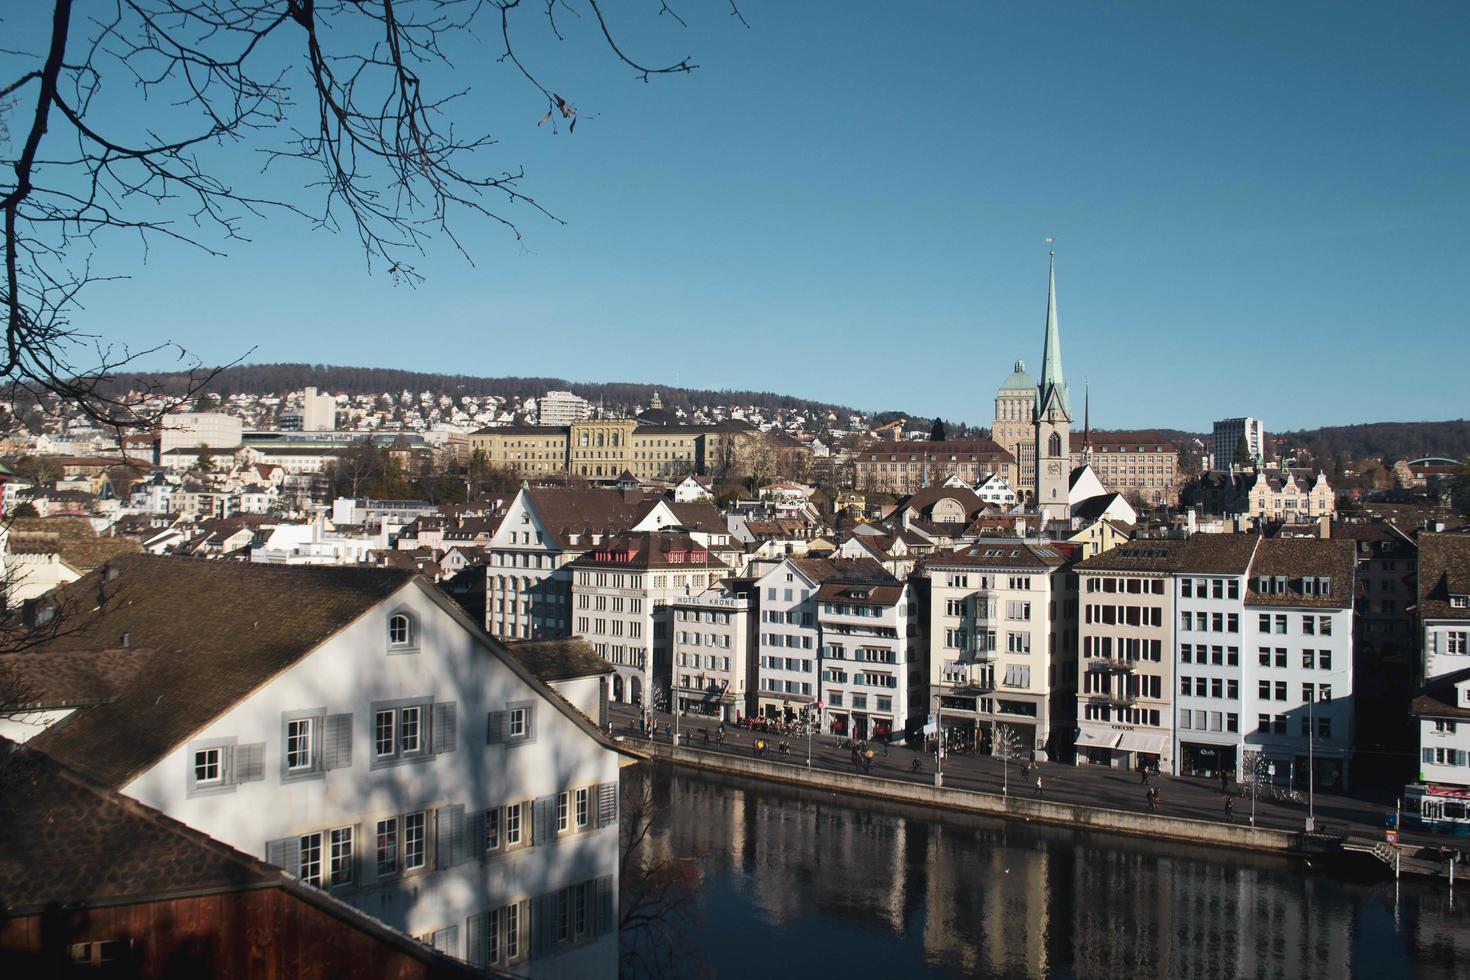 paesaggio urbano della città di zurigo, svizzera foto